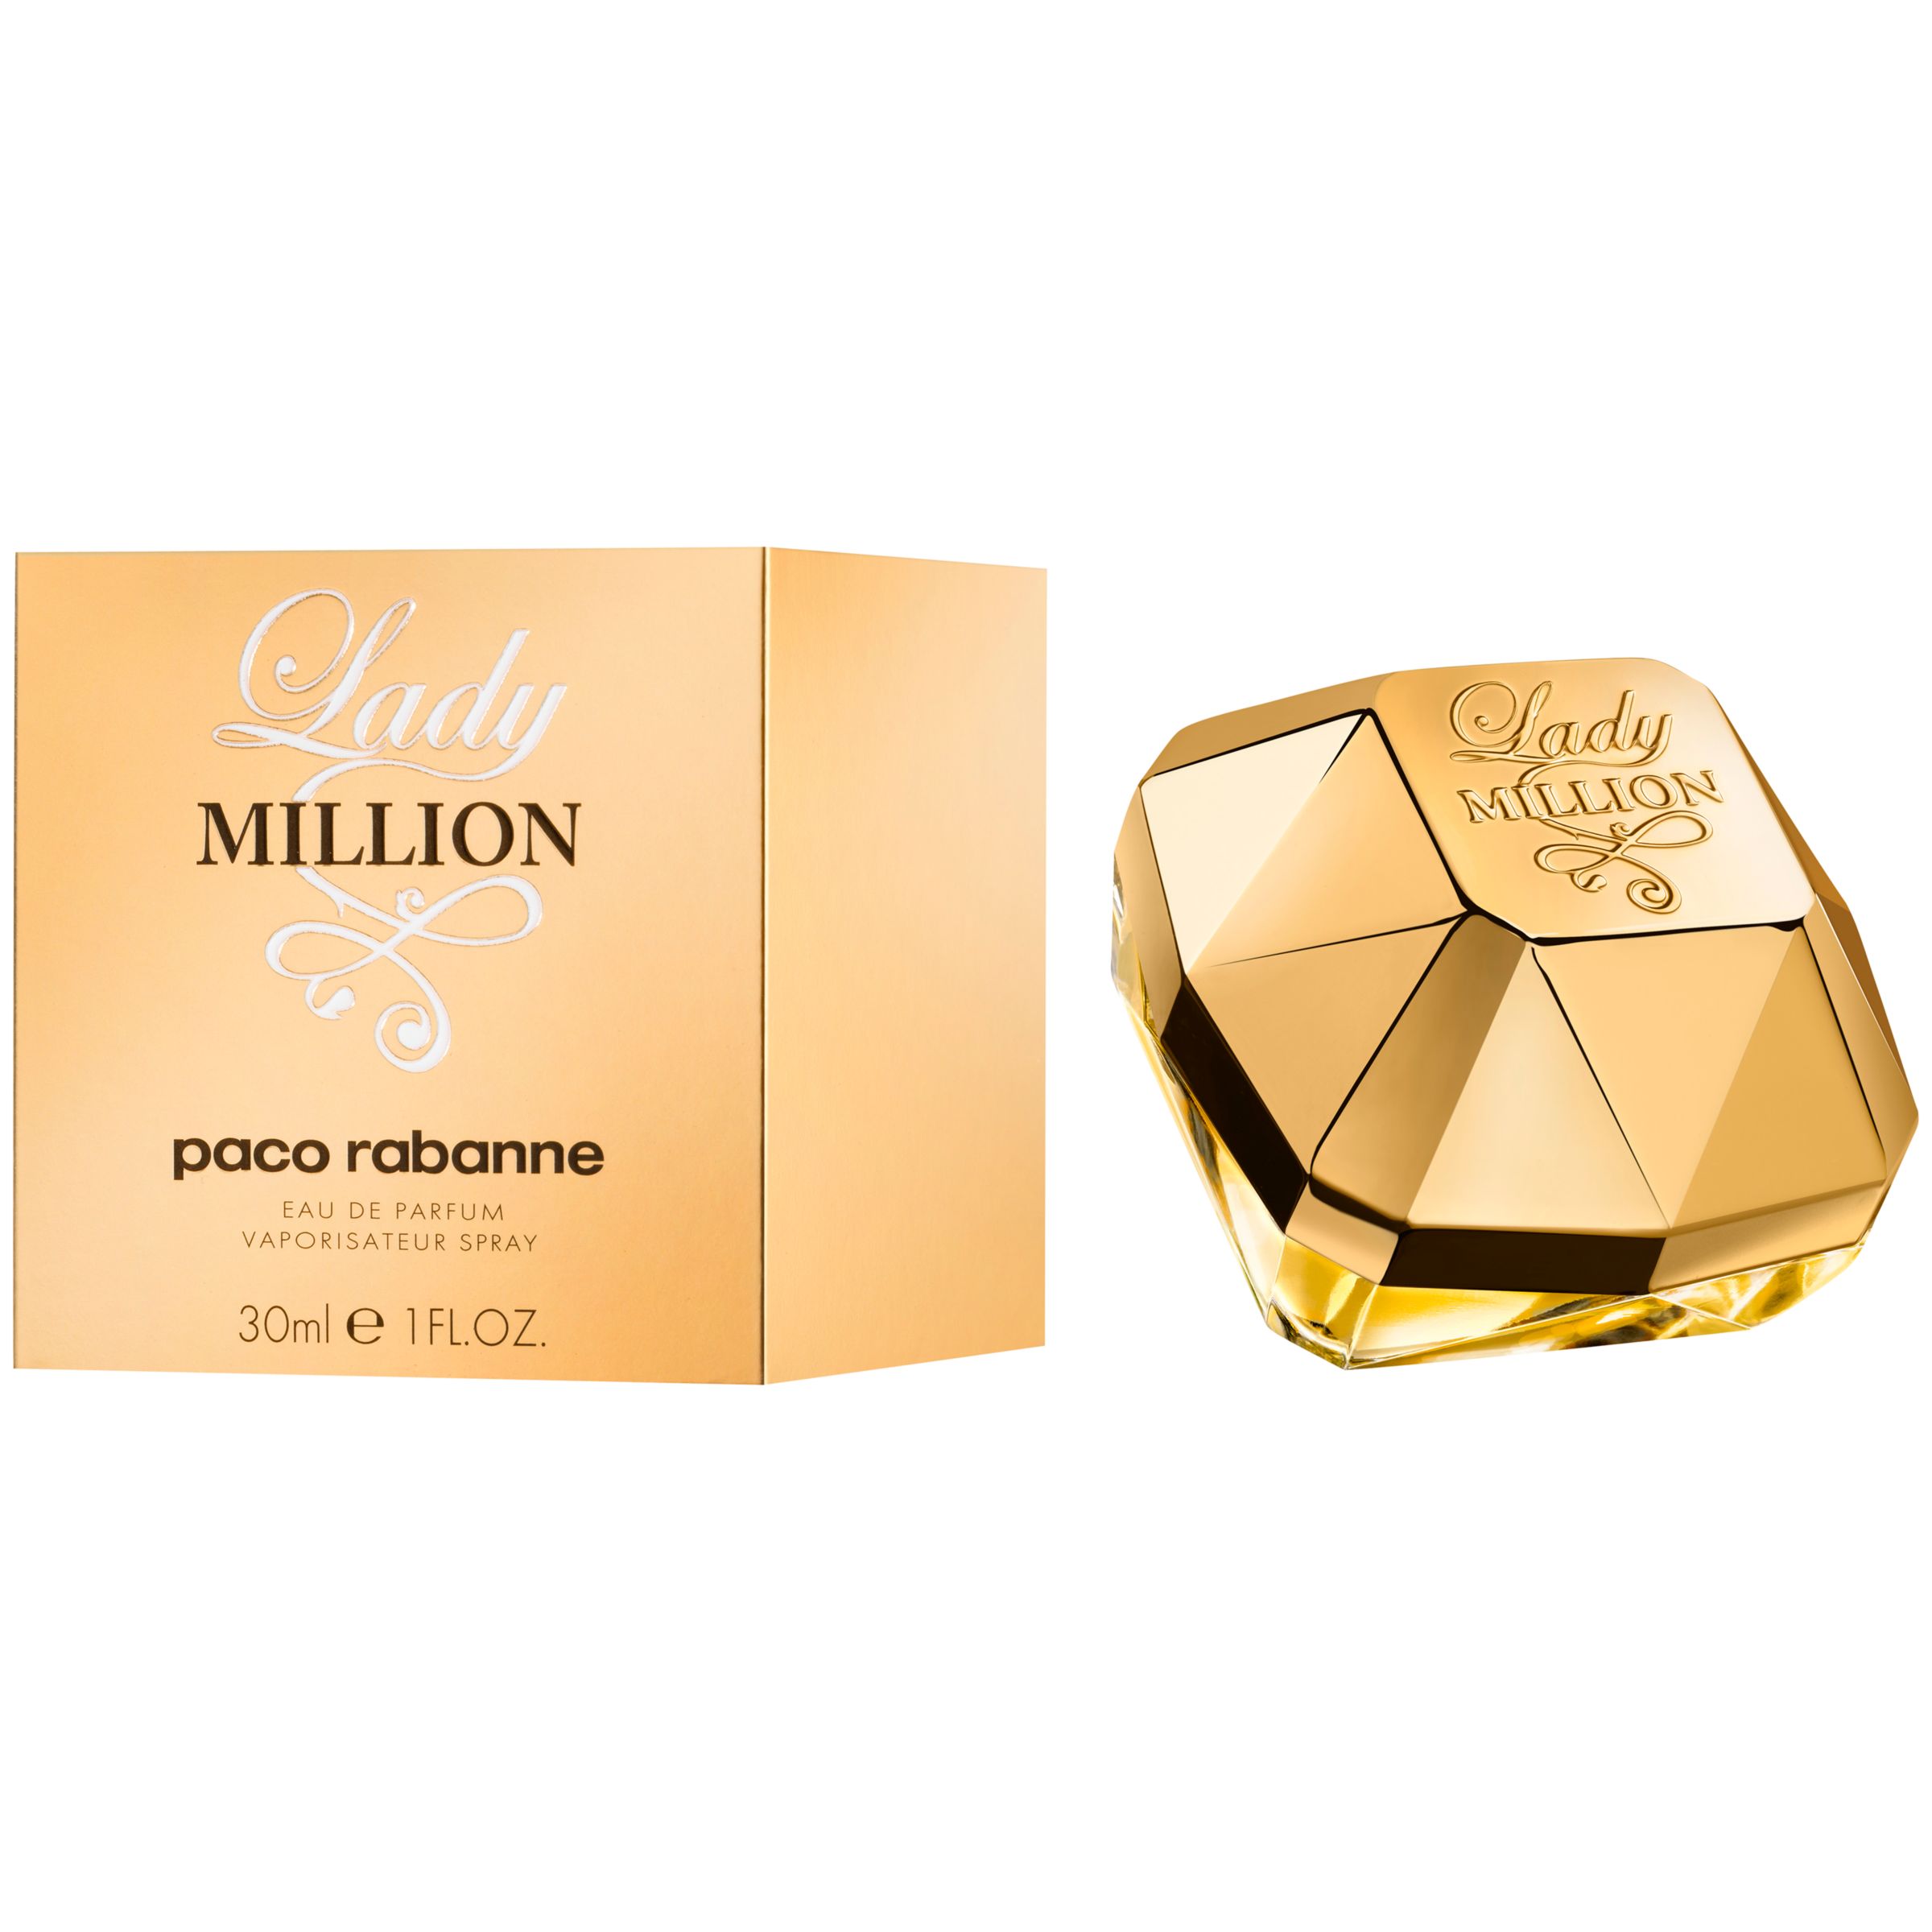 Beregn Svaghed forhistorisk Paco Rabanne Lady Million Eau de Parfum, 30ml at John Lewis & Partners